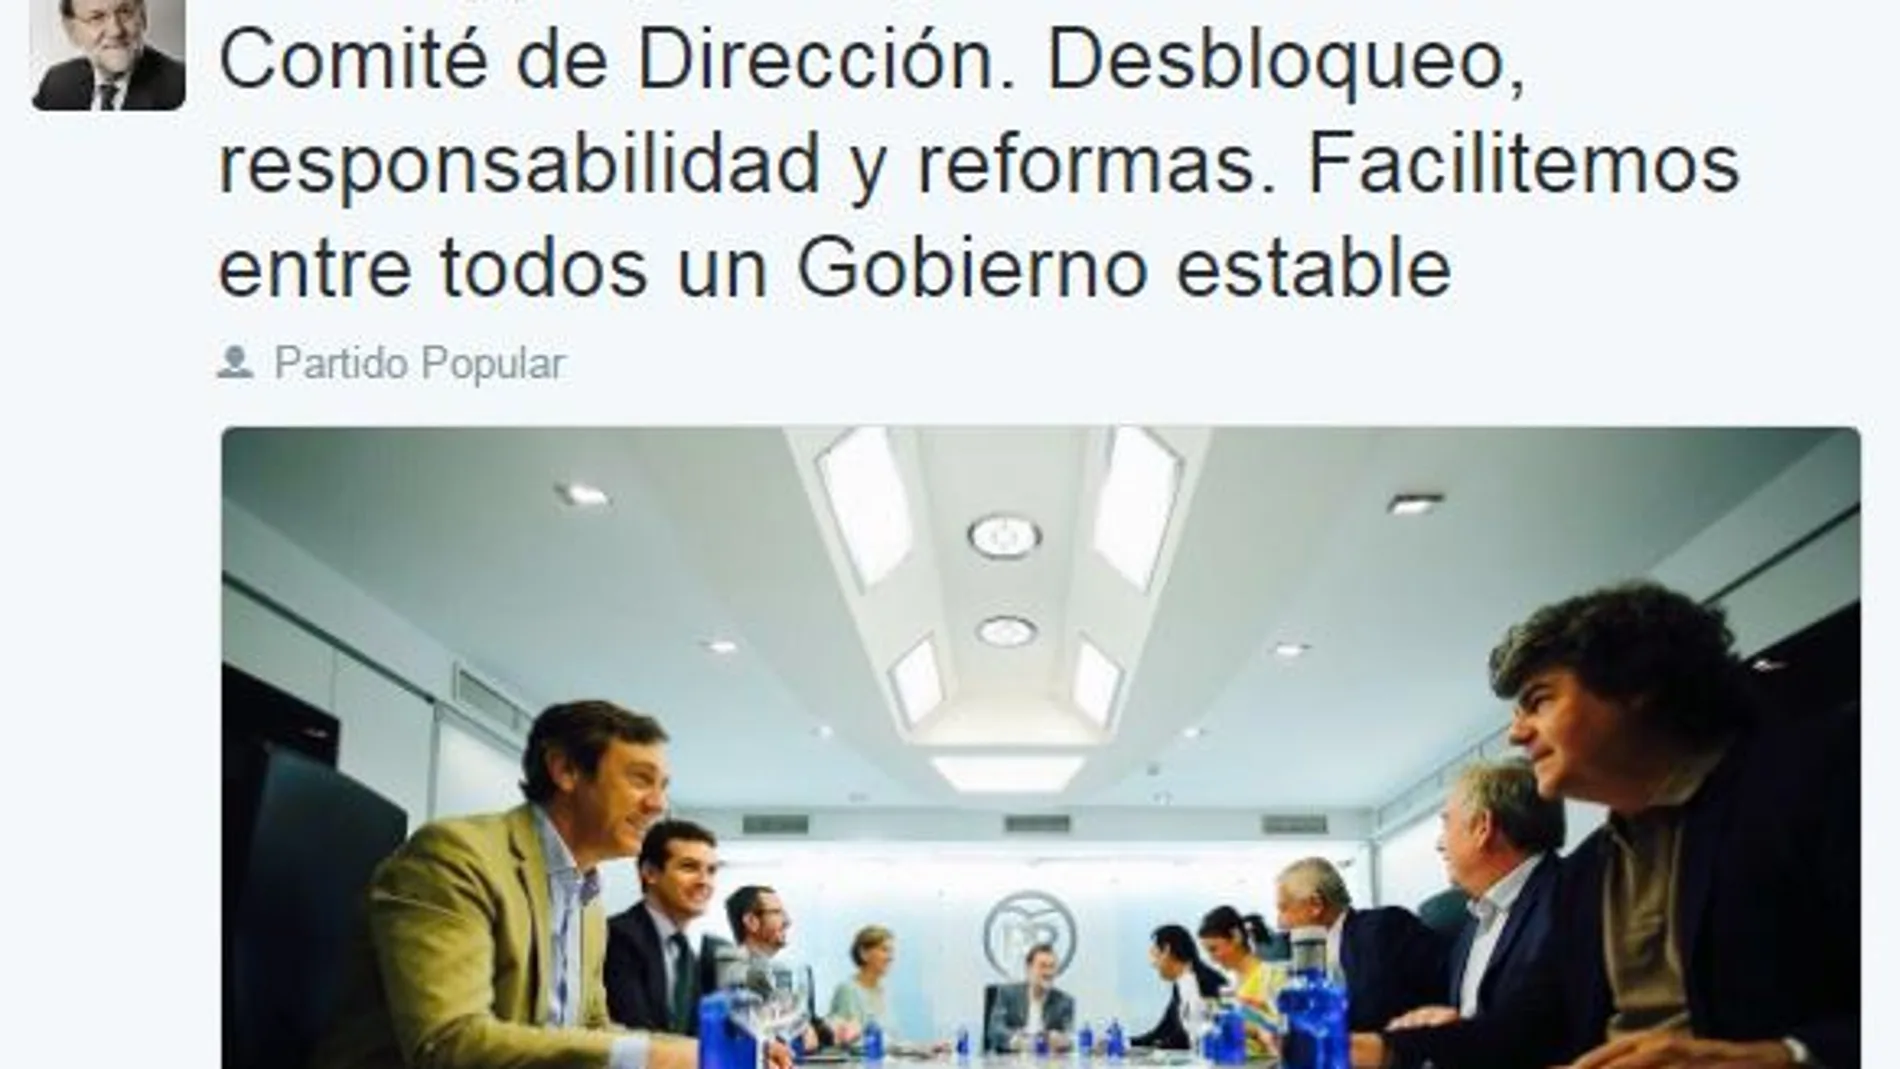 Rajoy apela a la responsabilidad para el desbloqueo: «Facilitemos entre todos un Gobierno estable»